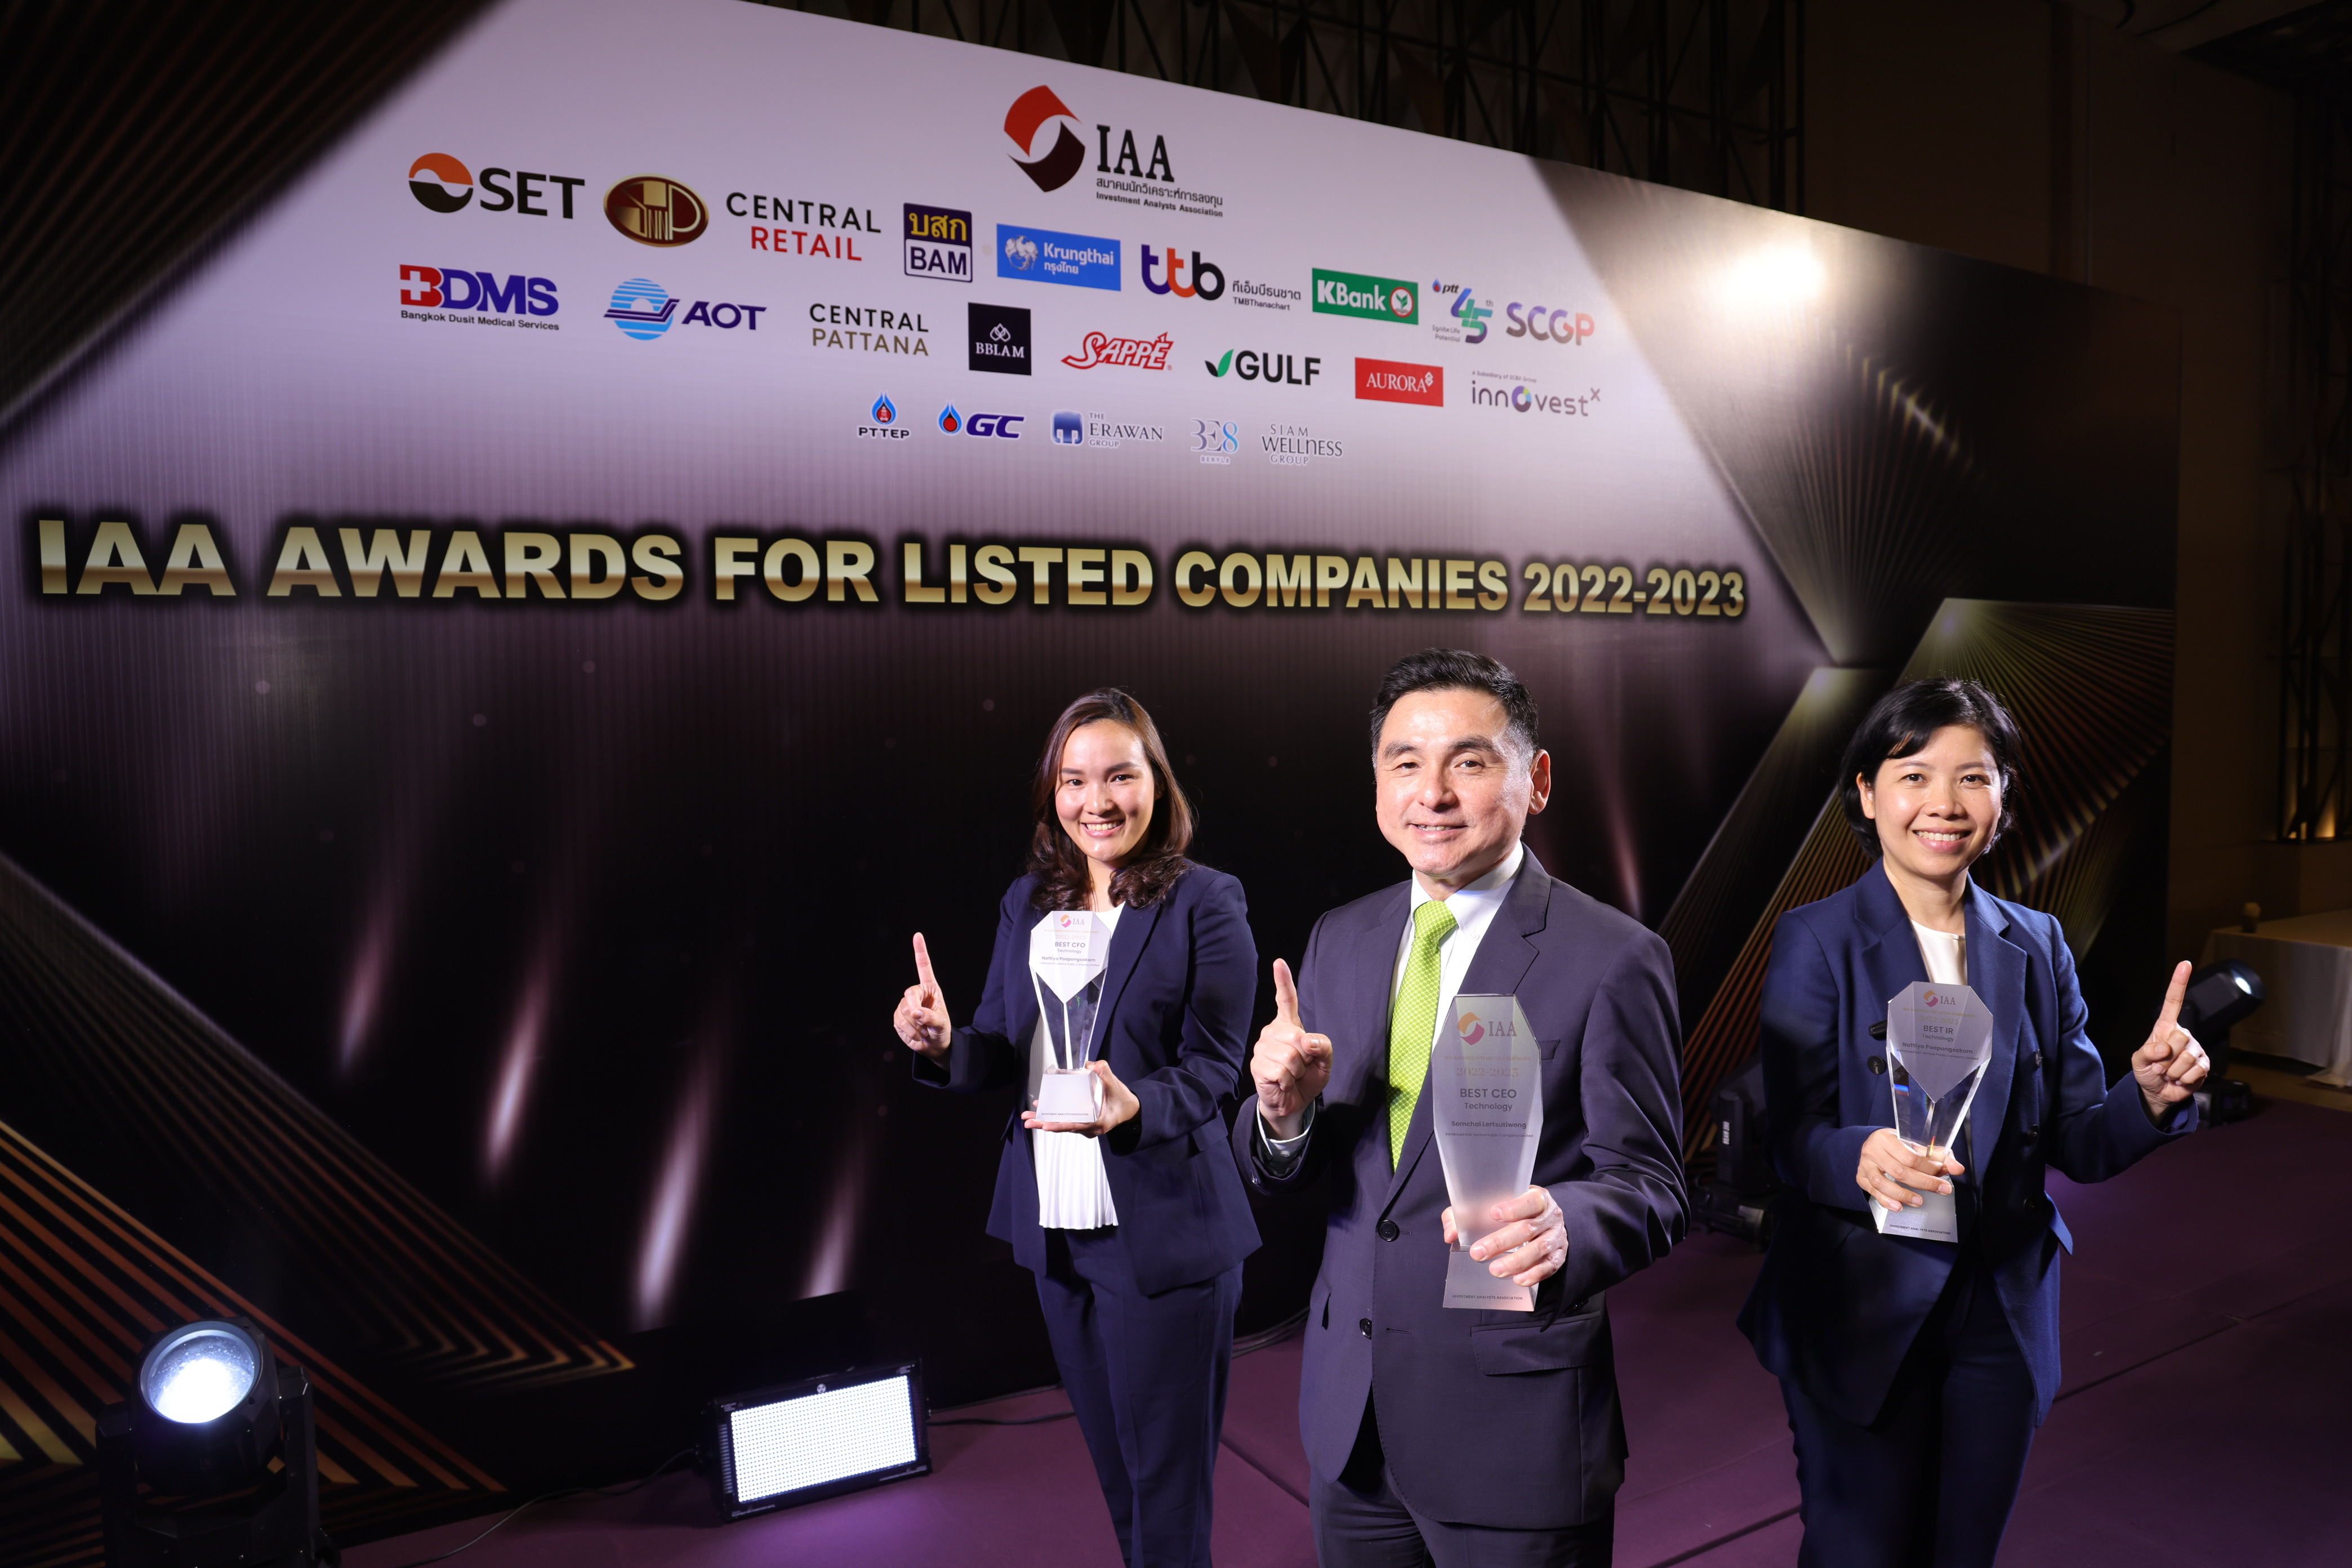 AIS ยืนหนึ่ง คว้า 3 รางวัลใหญ่ CEO-CFO-IR ยอดเยี่ยมจากสมาคมนักวิเคราะห์การลงทุน ในเวที IAA Awards for Listed Companies 2022